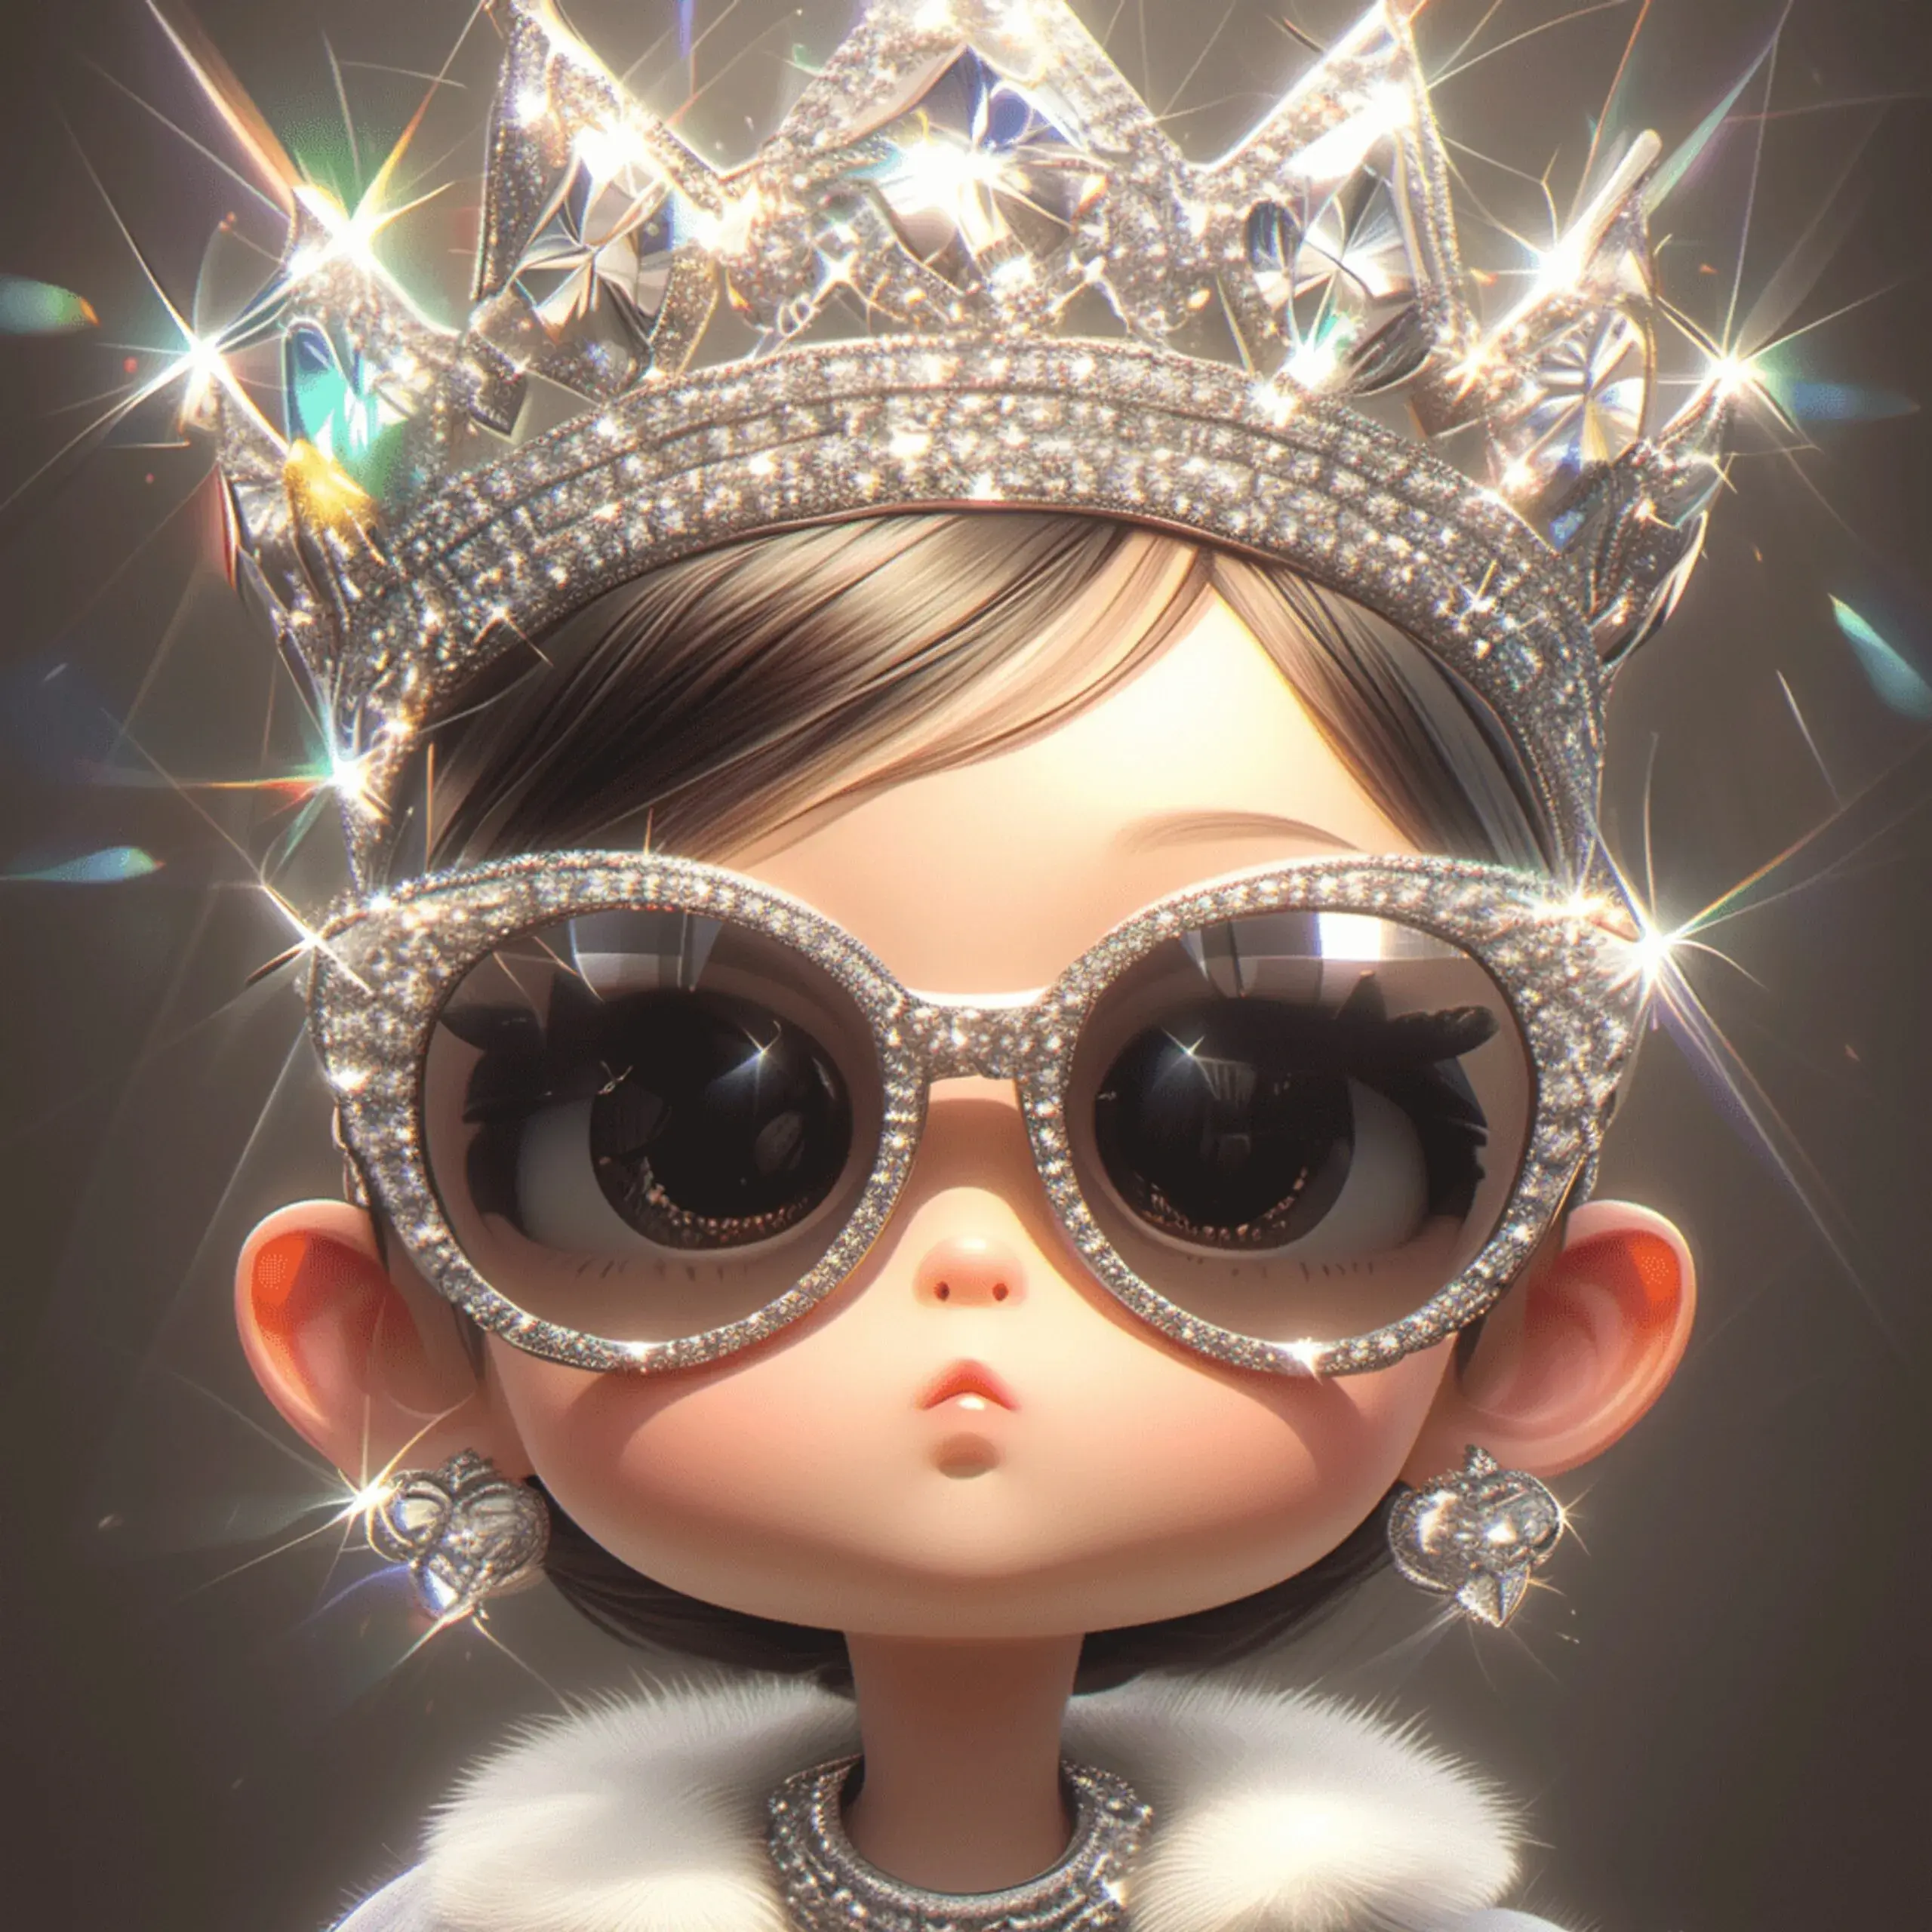 头像分享,戴着皇冠的小公主头像